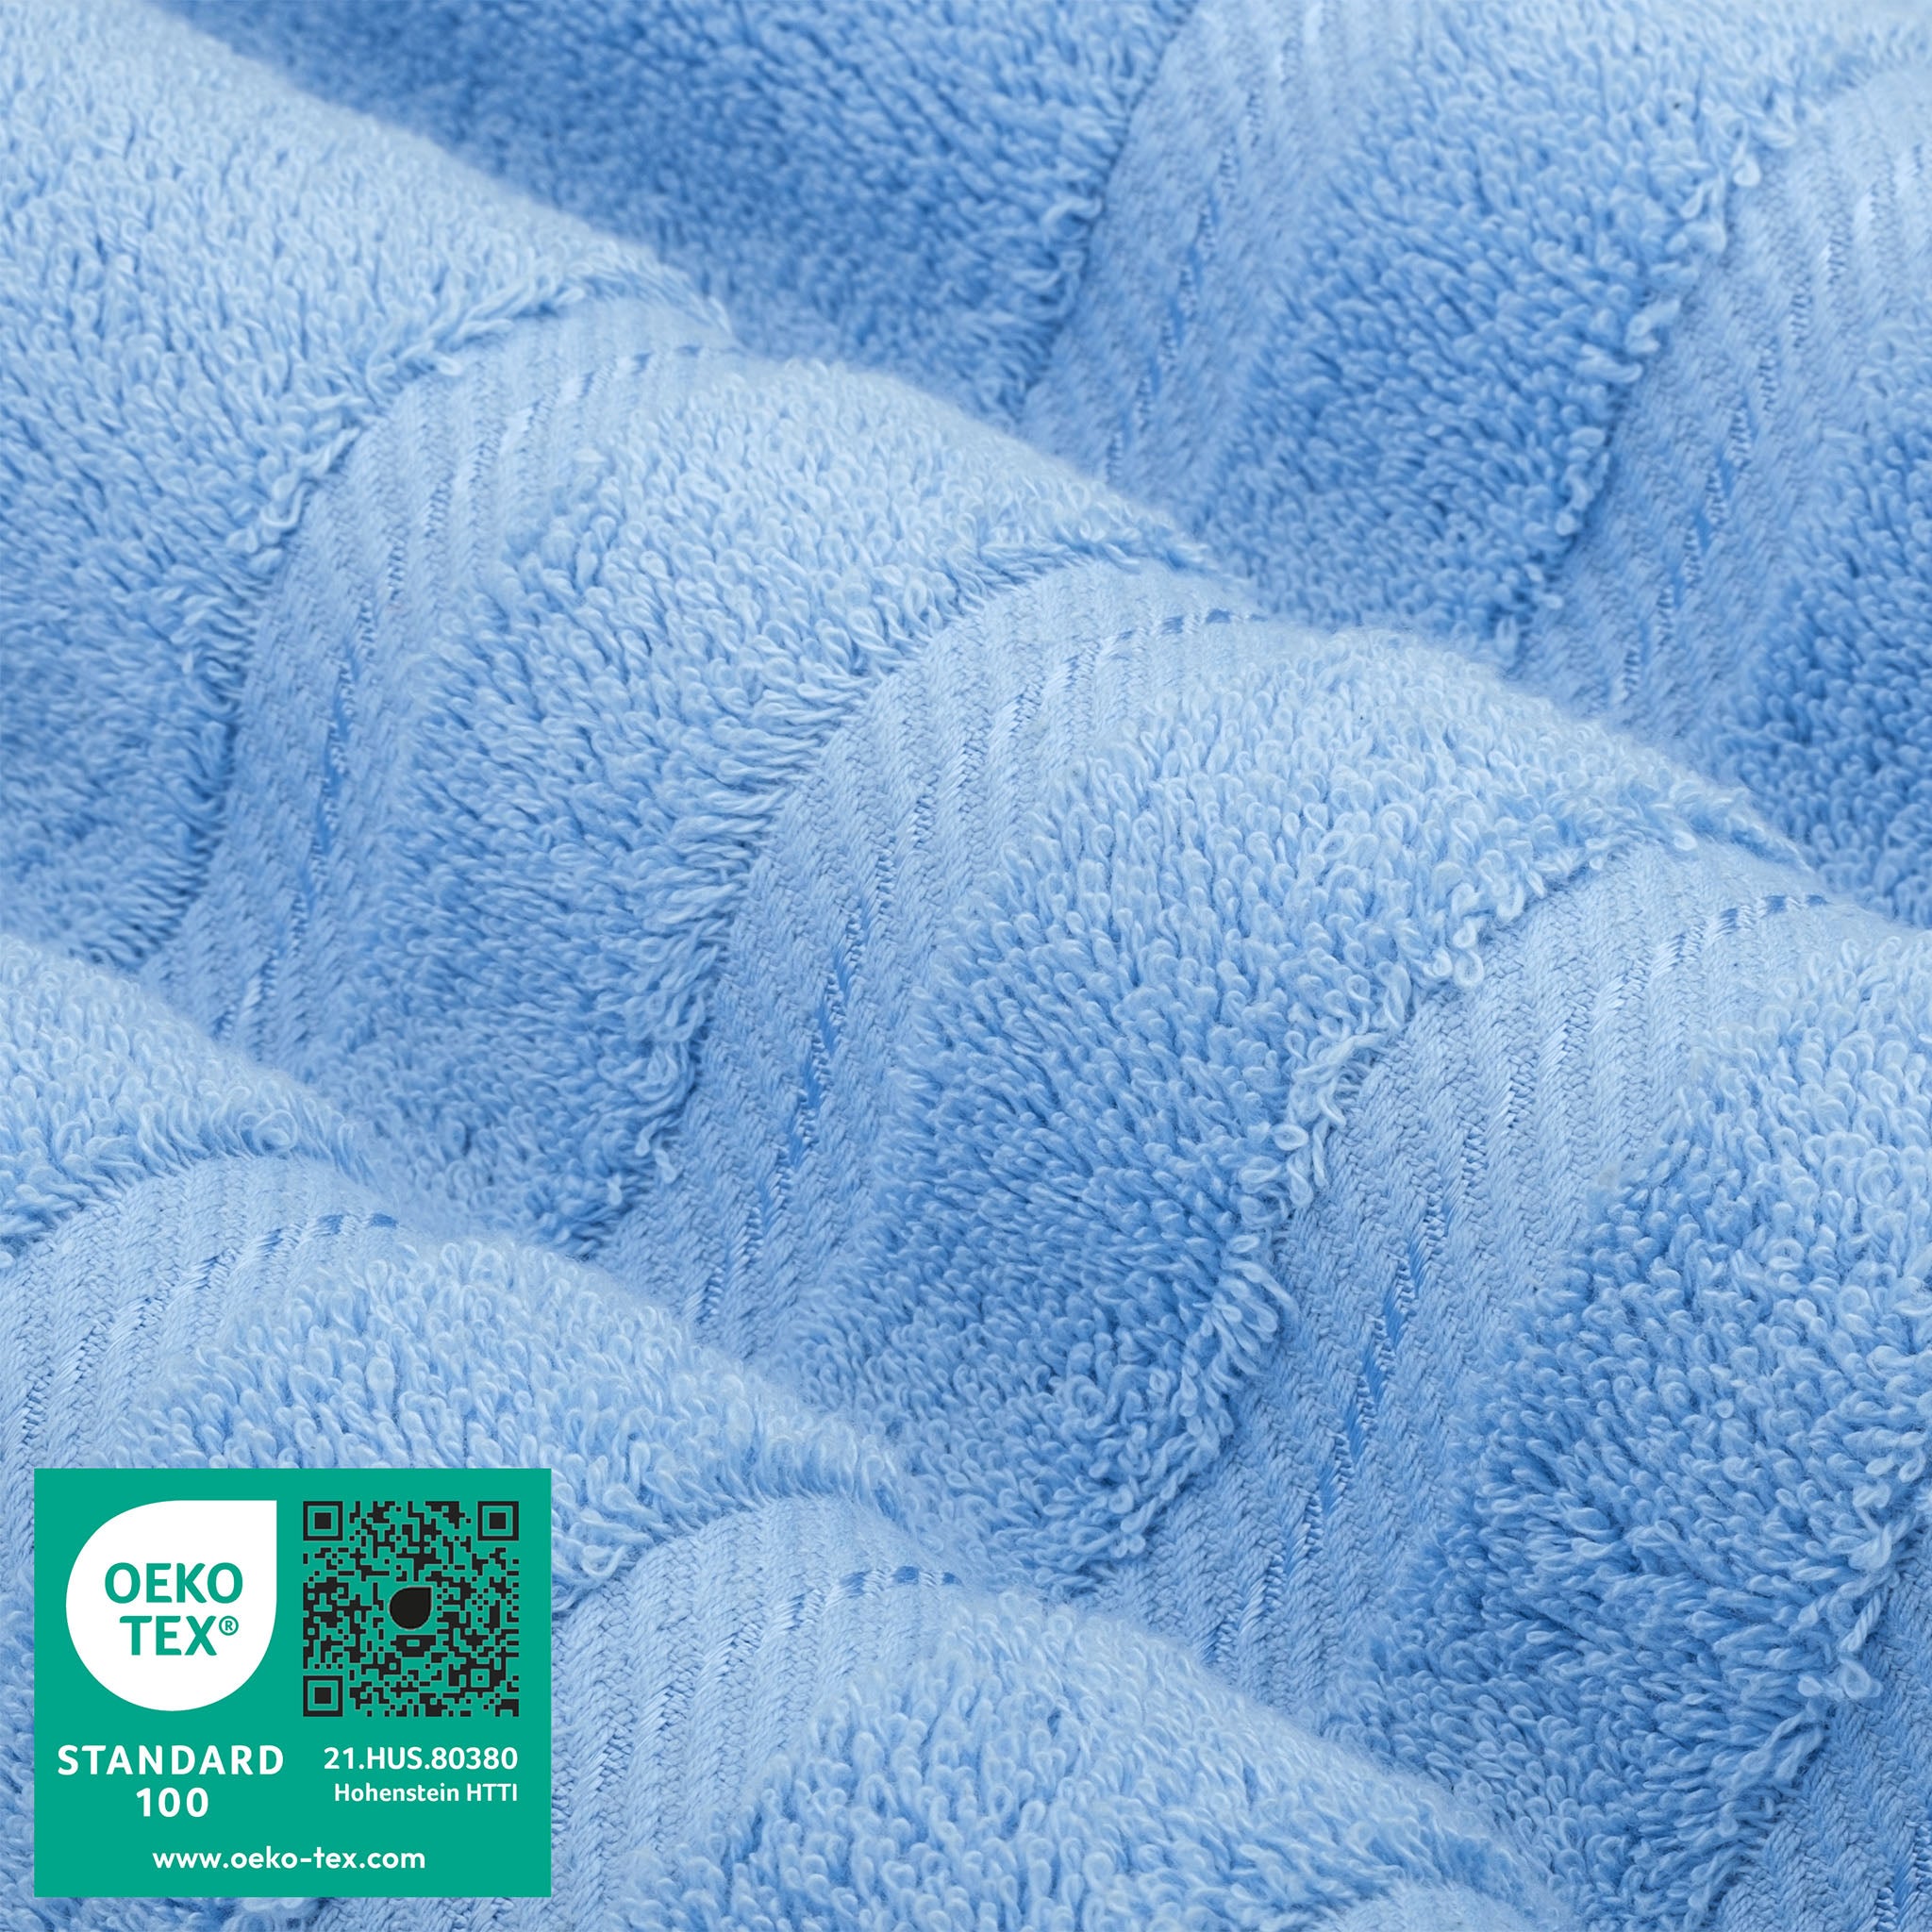 American Soft Linen 100% Turkish Cotton 6 Piece Towel Set Wholesale sky-blue-3